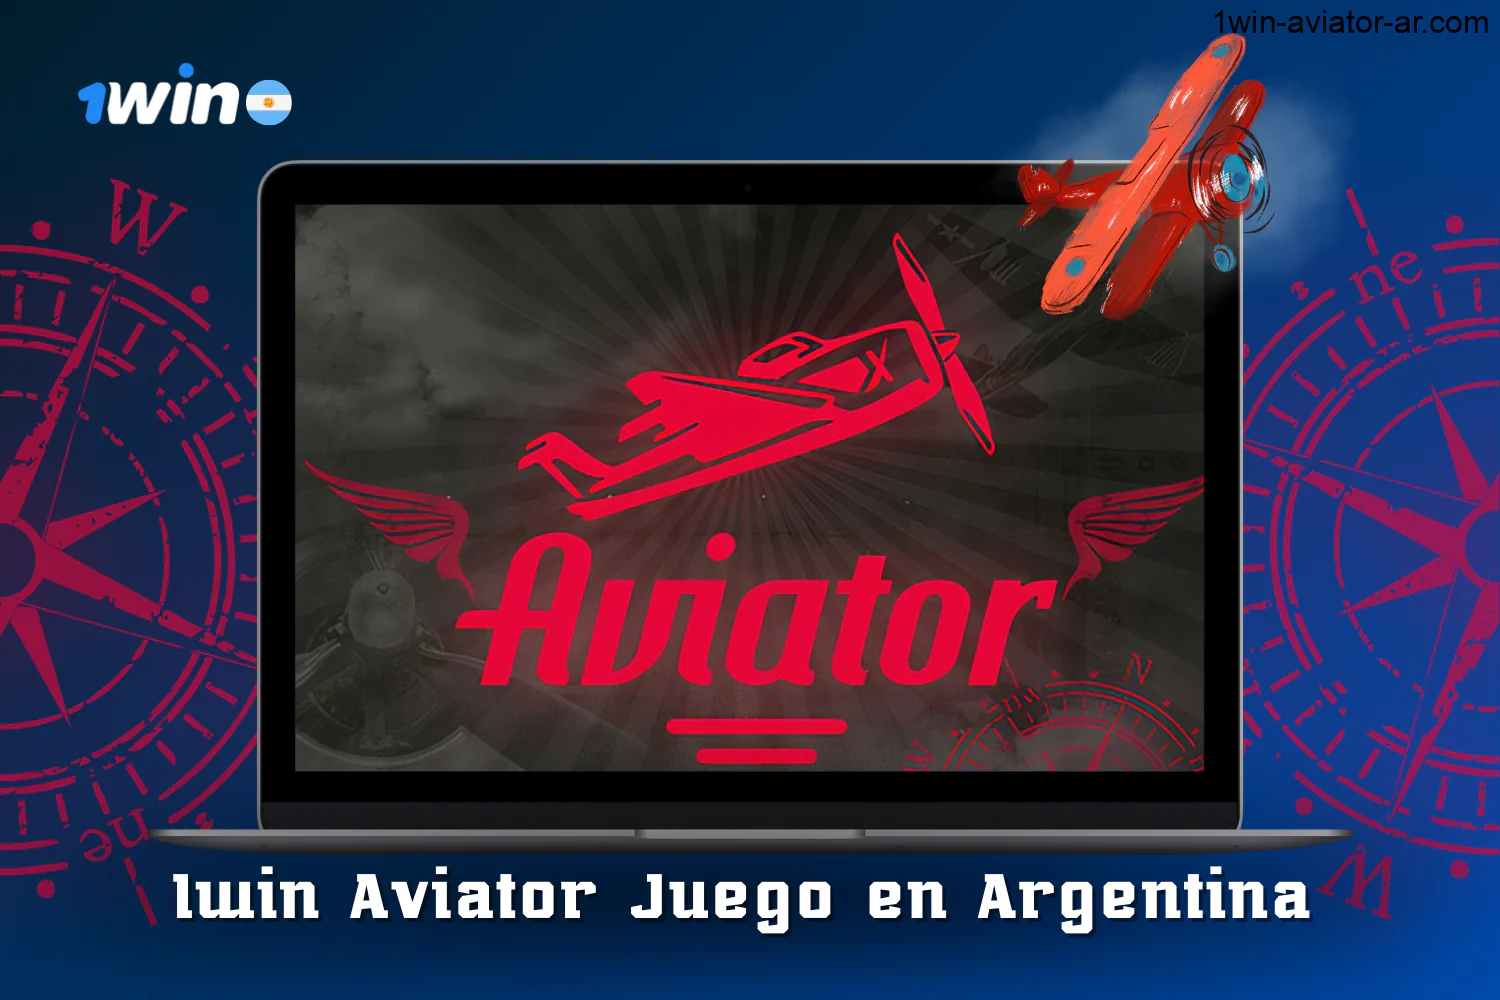 El juego 1win Aviator está disponible para los jugadores de Argentina